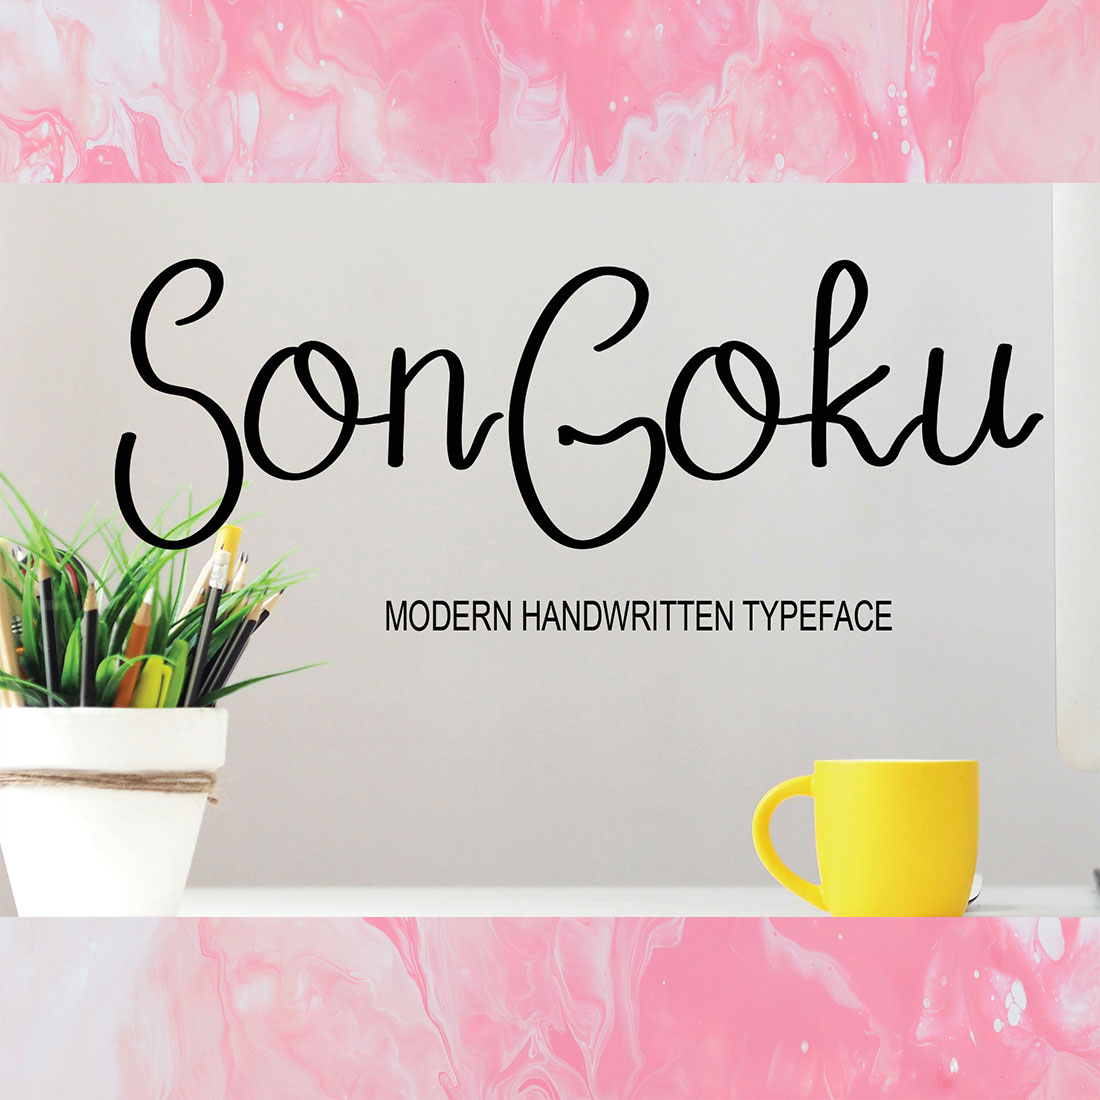 Font Script Signature Yonkao Design cover image.